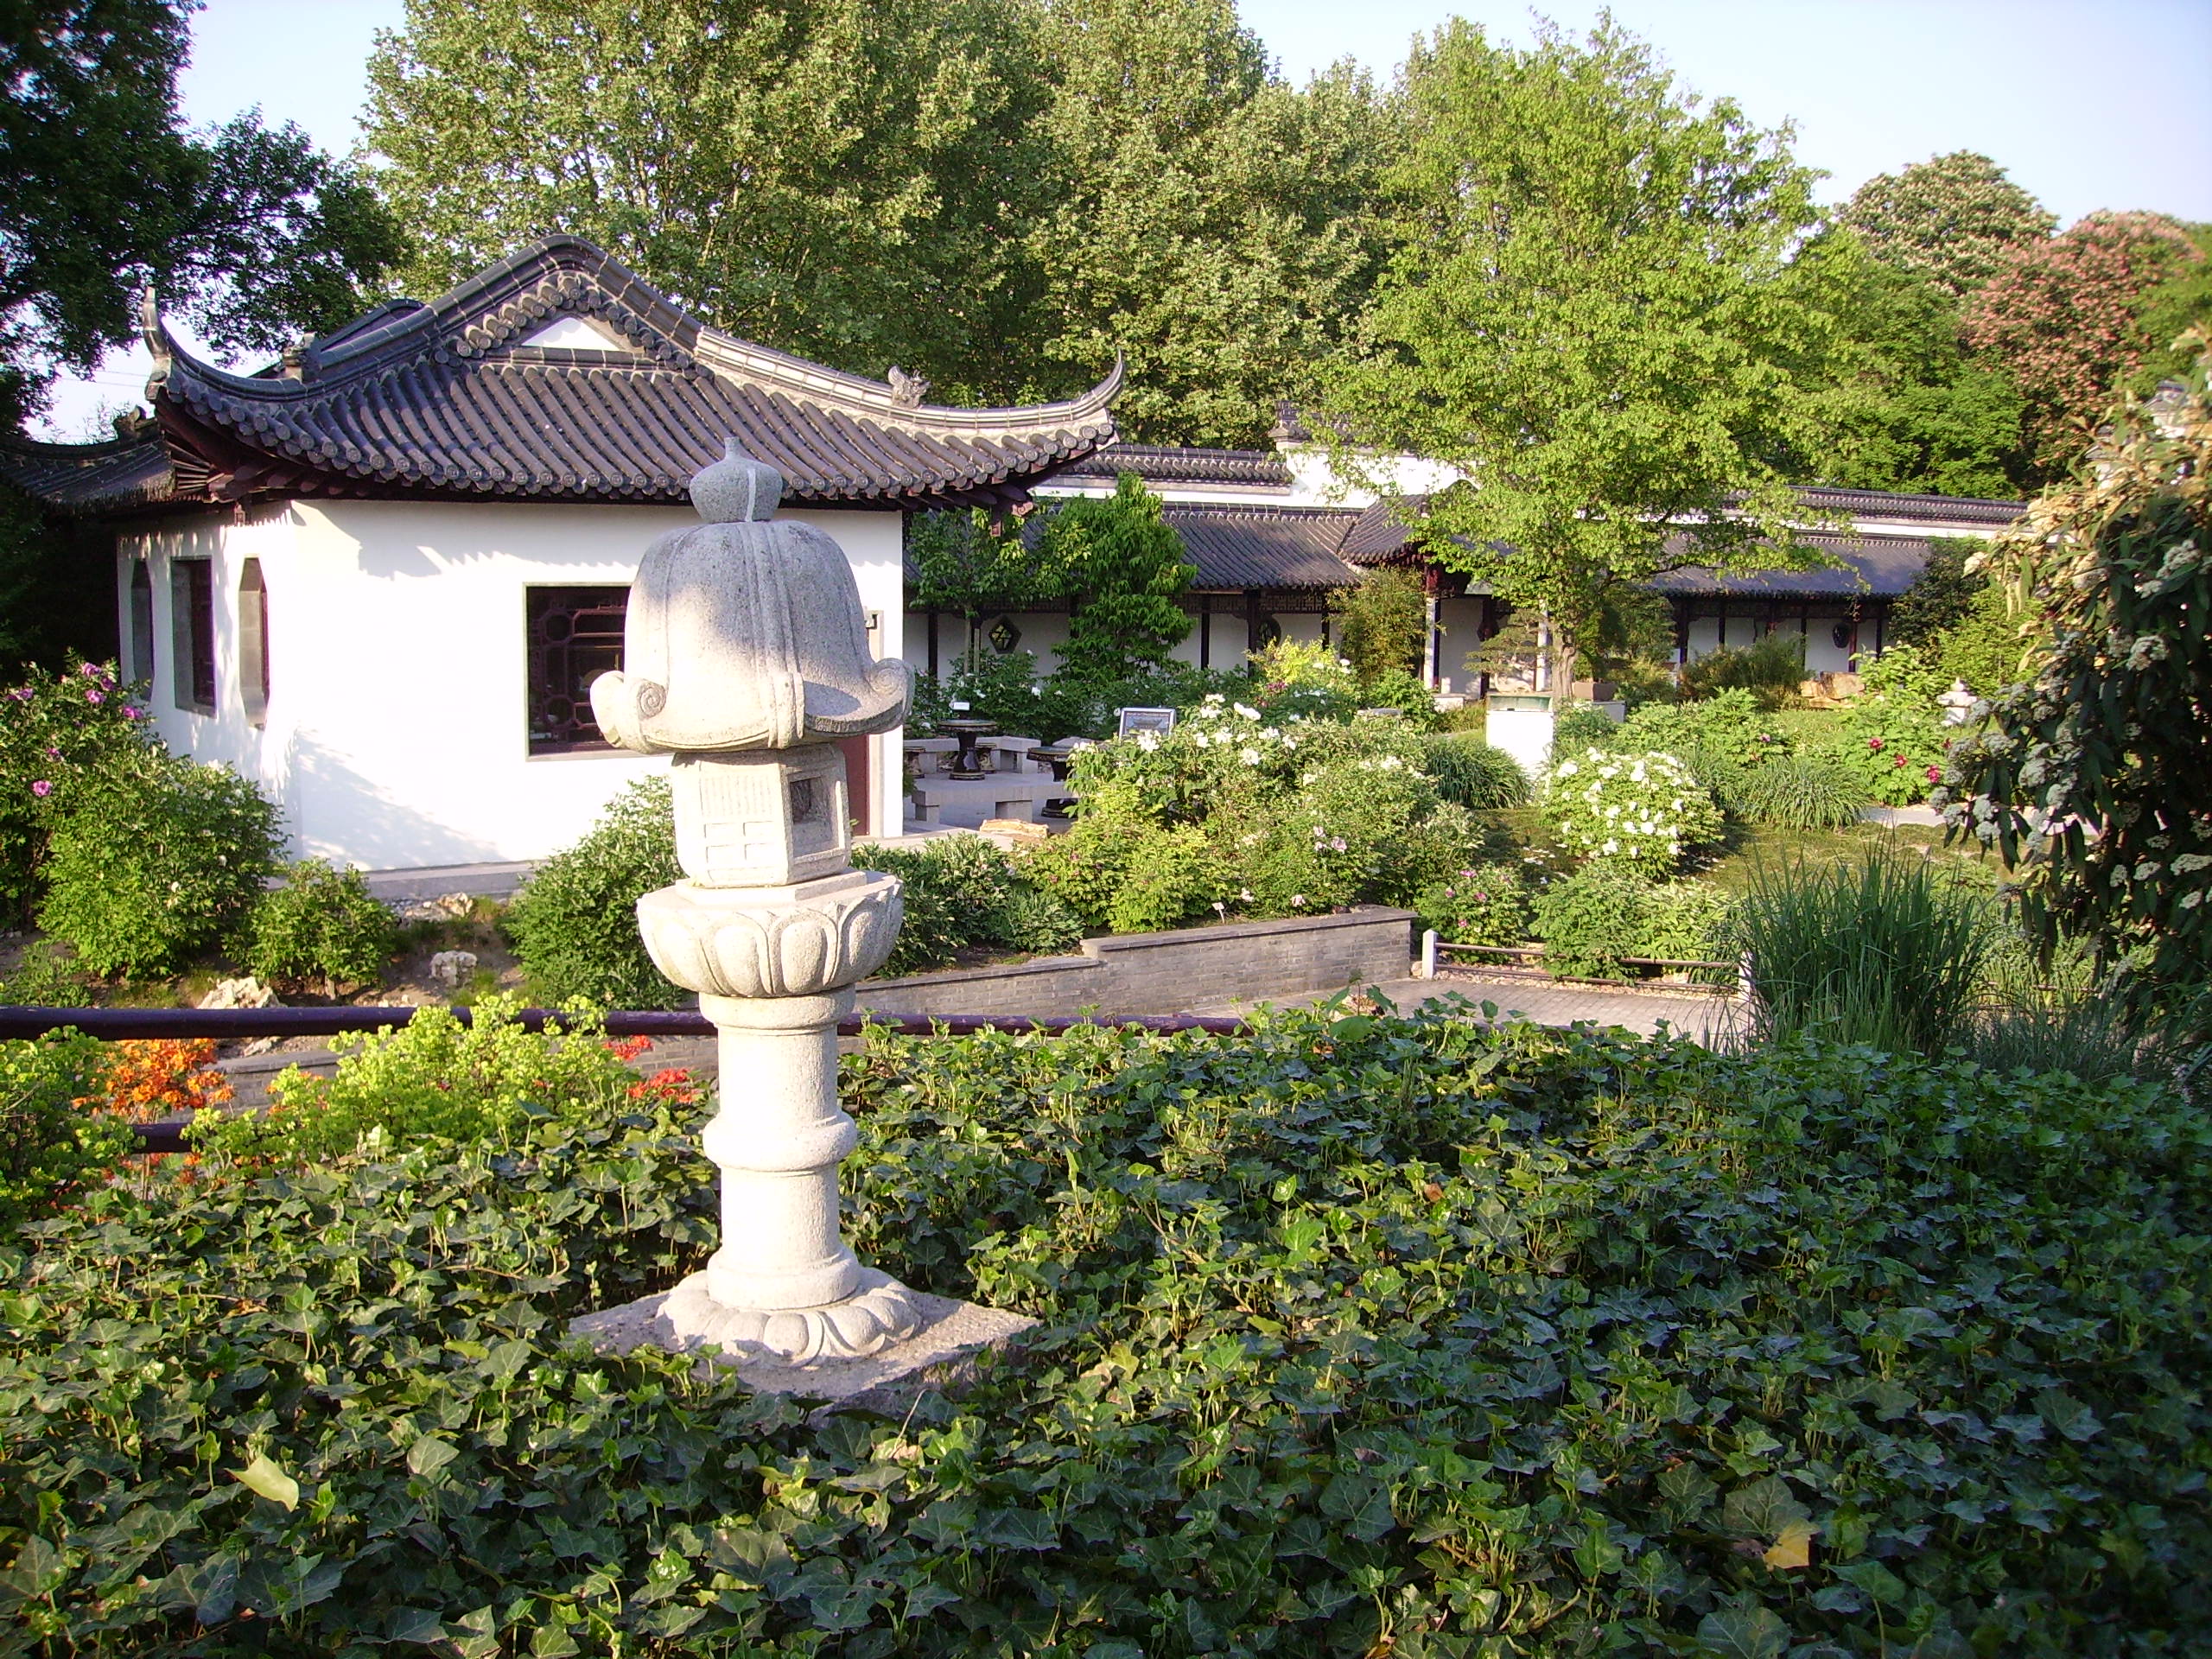 Datei:Chinesisches Teehaus Luisenpark 4.jpg